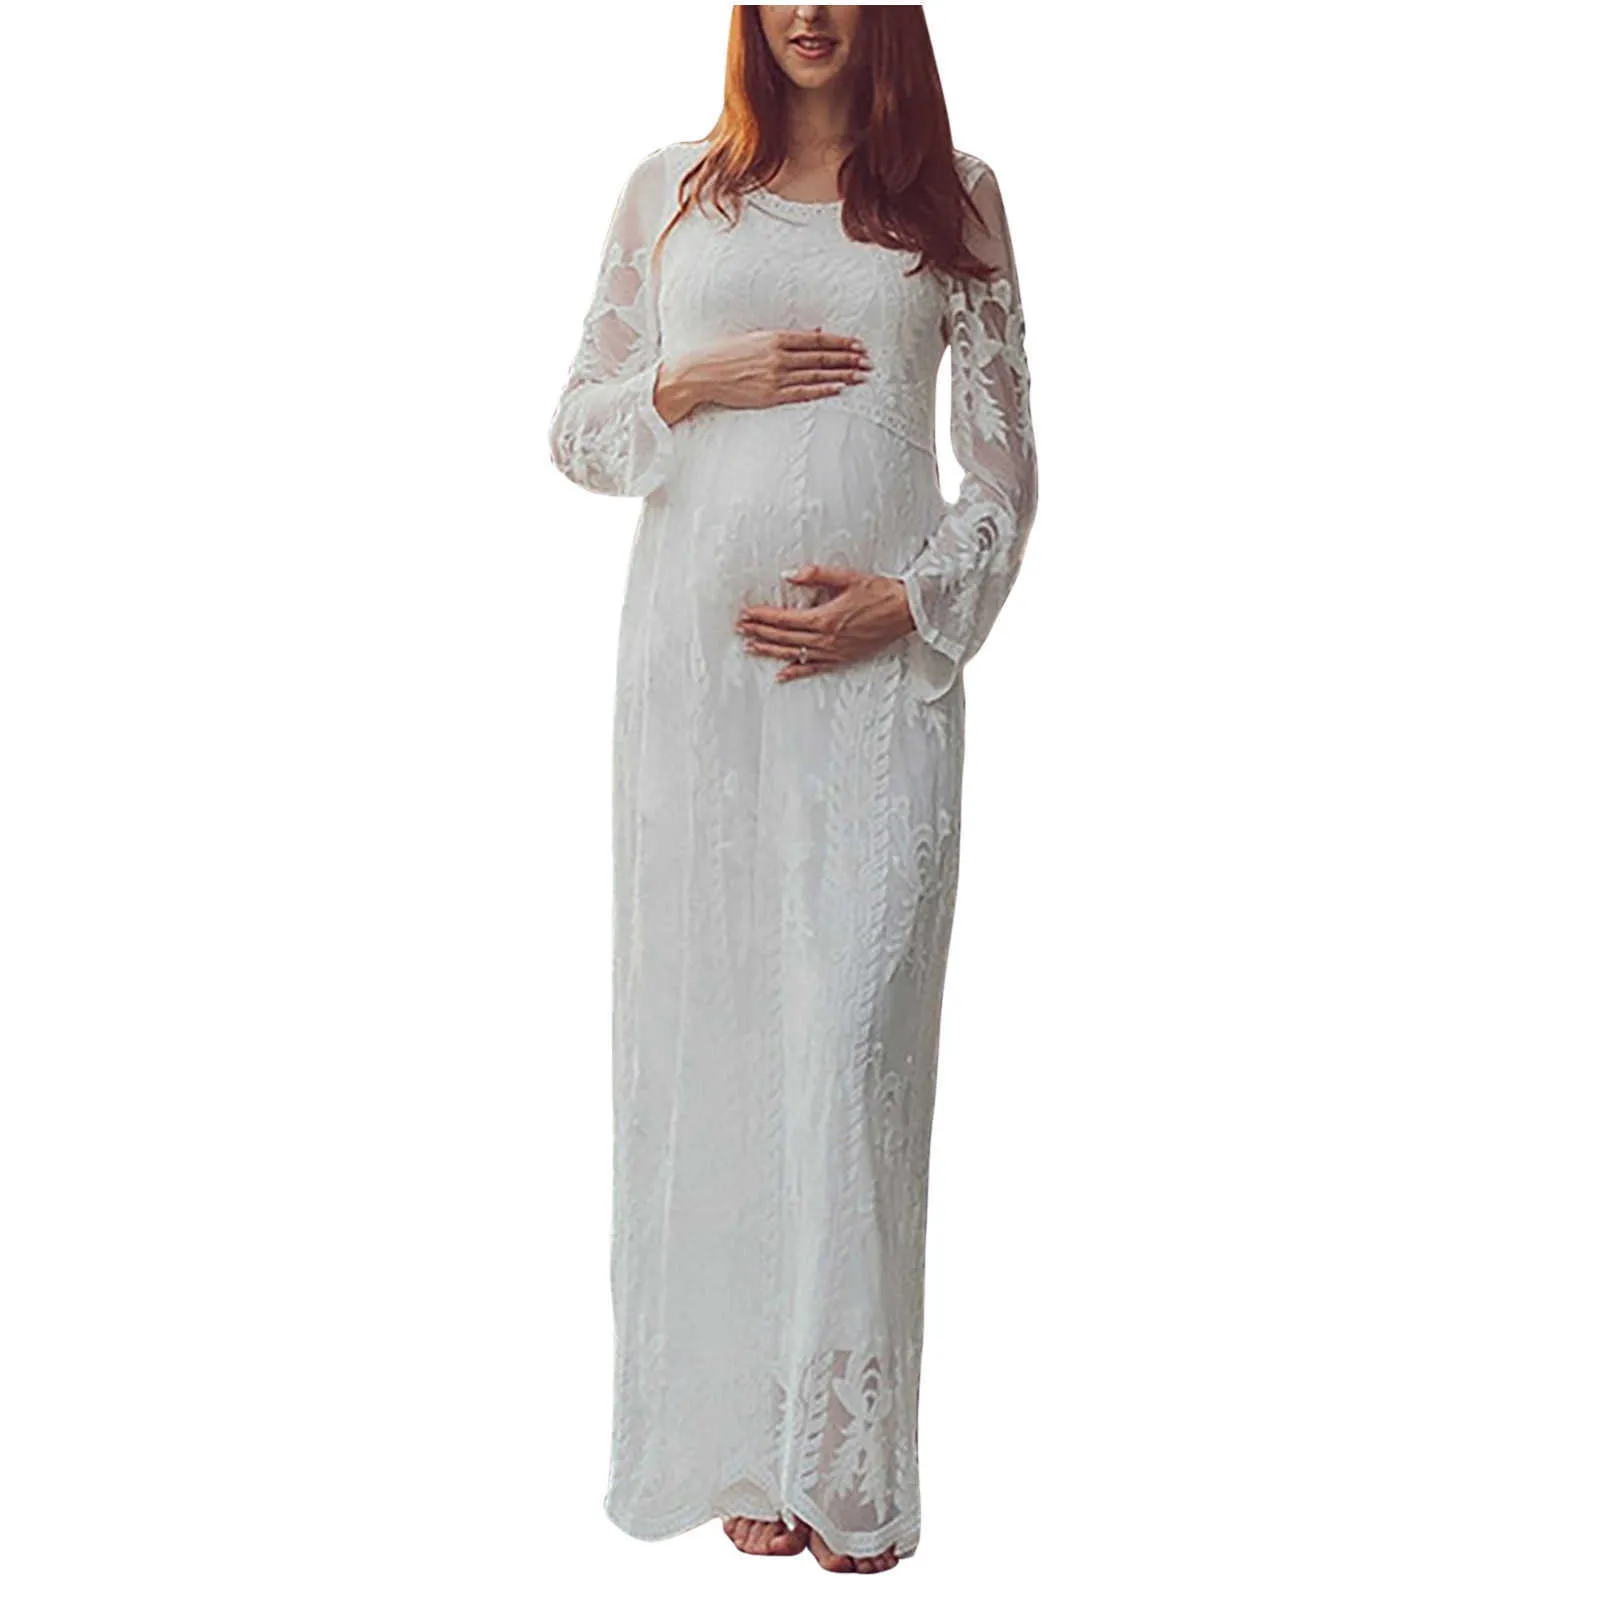 Donne Elegence Gravidanza Maxi Abito lungo Fotografia Prop Pizzo Abiti bianchi solidi Abito di maternità per servizio fotografico in gravidanza Q0713